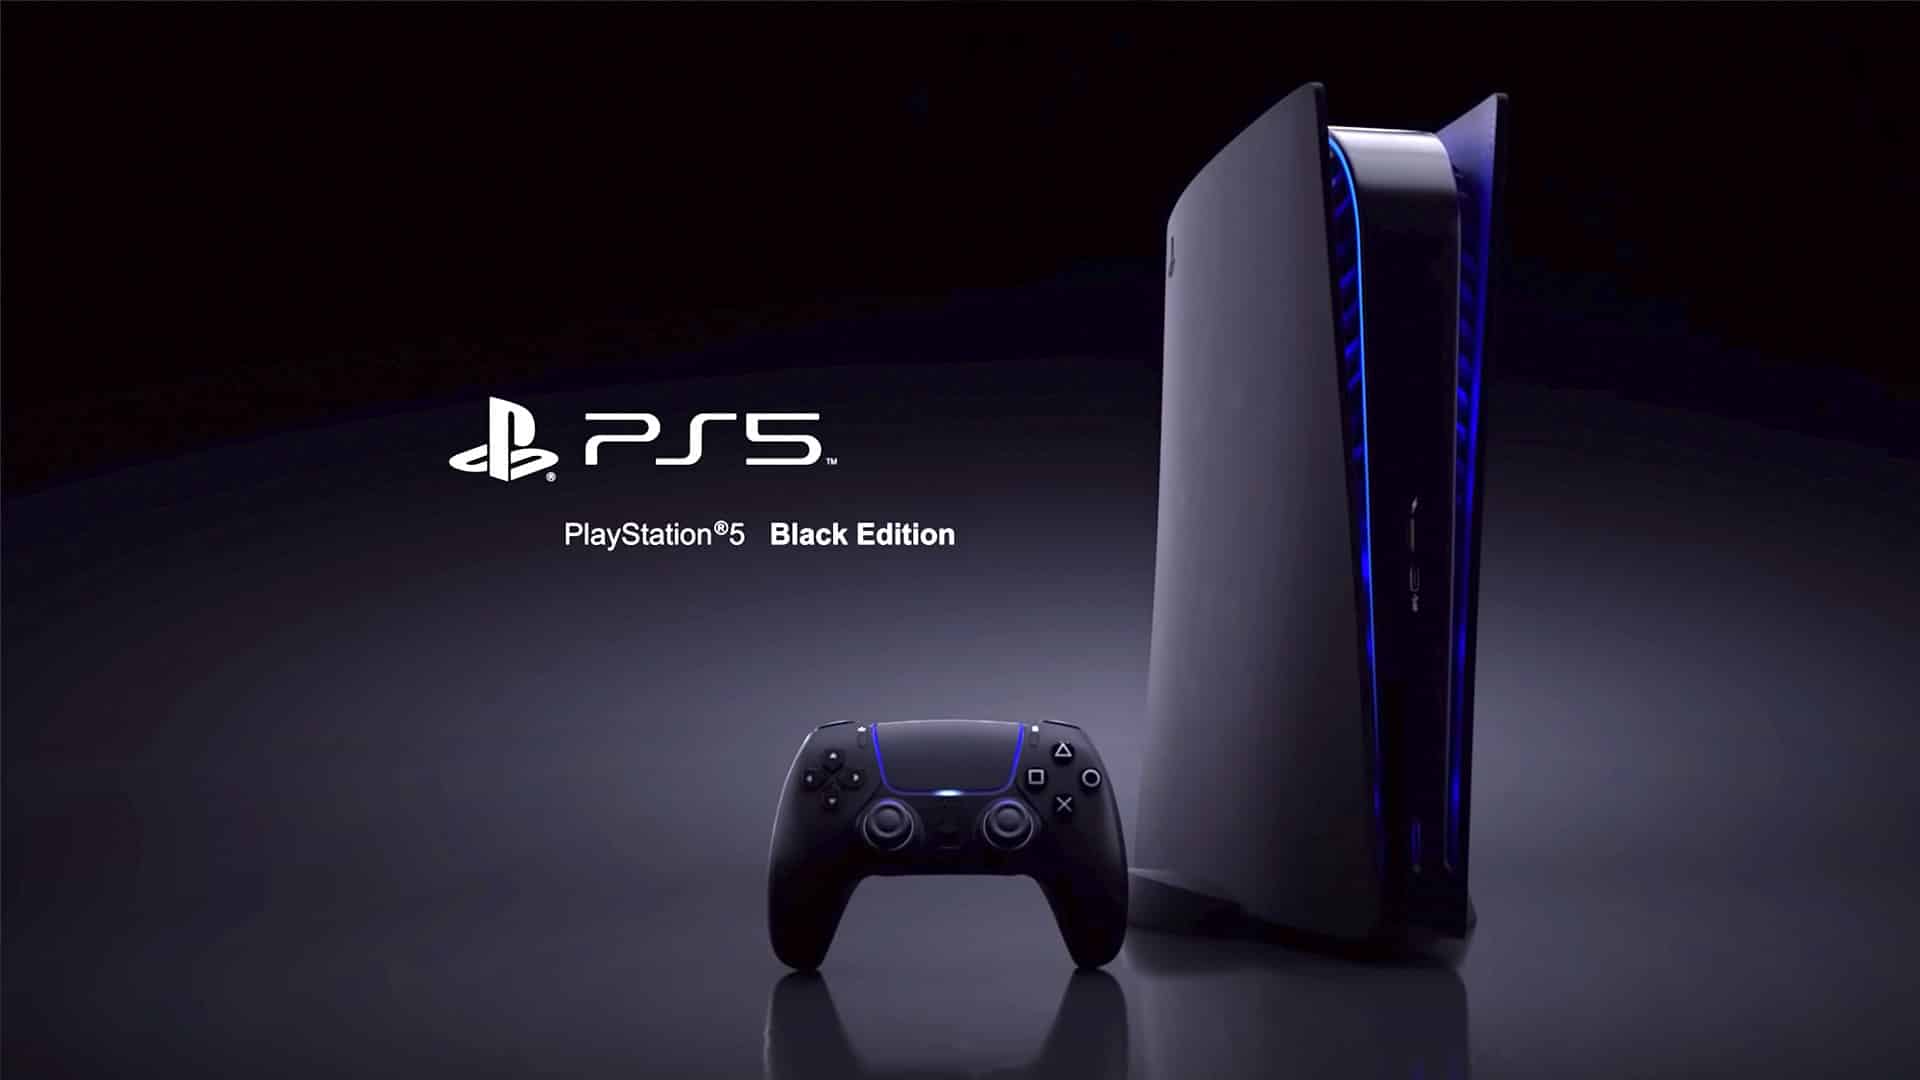 PS5 Black Edition DualSense Controller Leaks Online